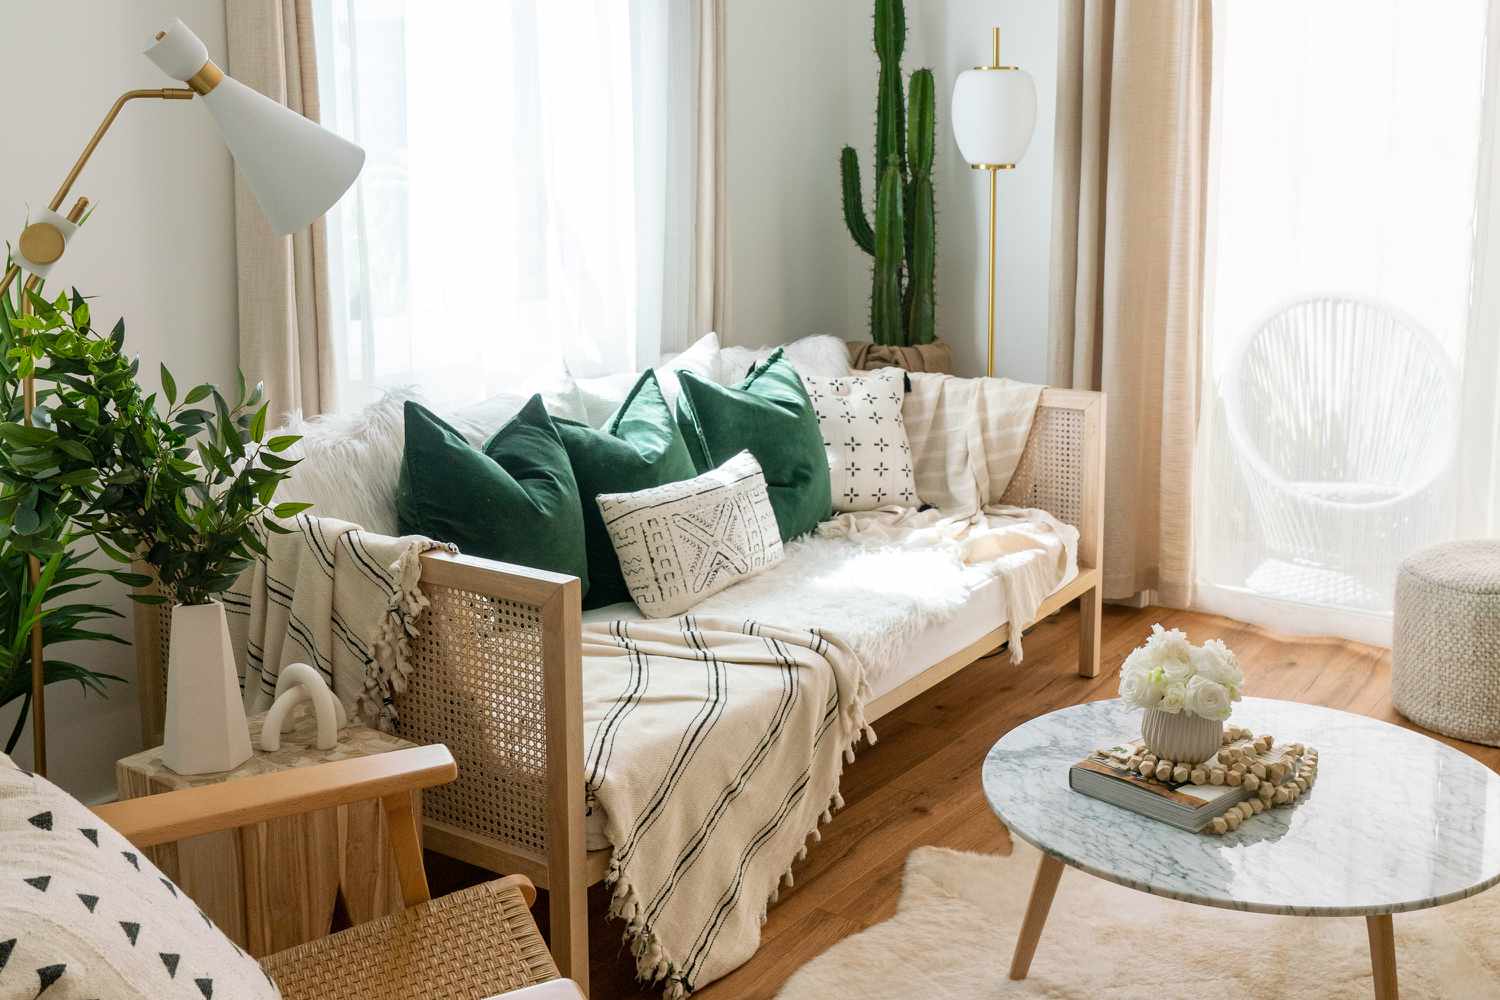 Canapé en bois avec couvertures et oreillers à motifs près d'une fenêtre lumineuse